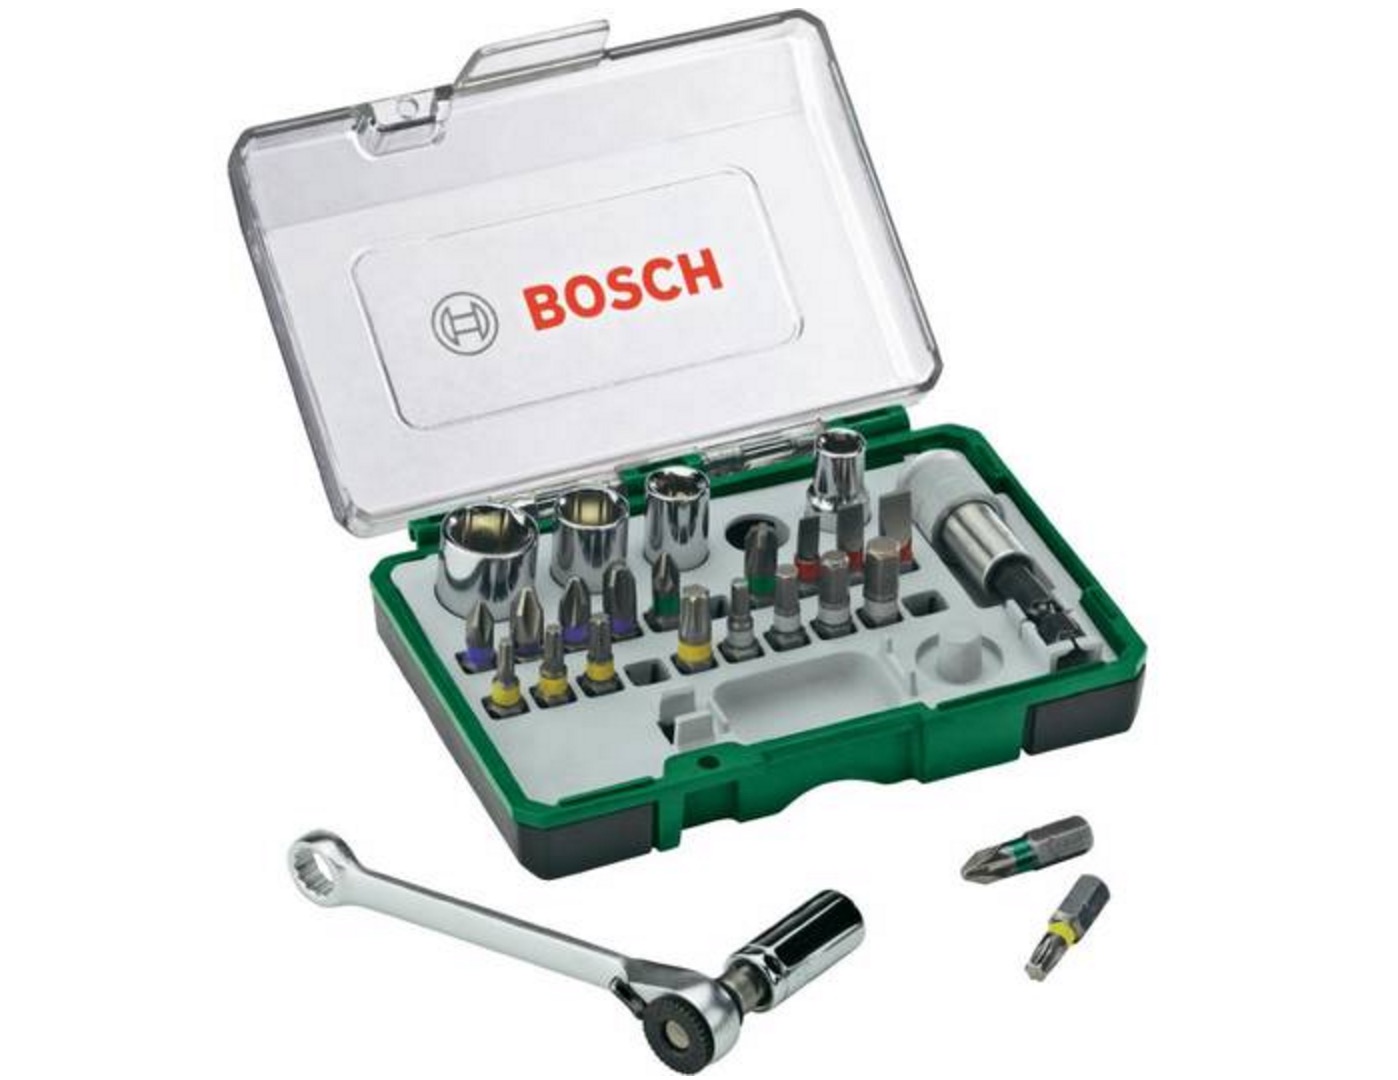 Bosch 27-teiliges Schrauberbit- und Ratschen-Set für nur 14,29€ (statt 18,94€) – Prime